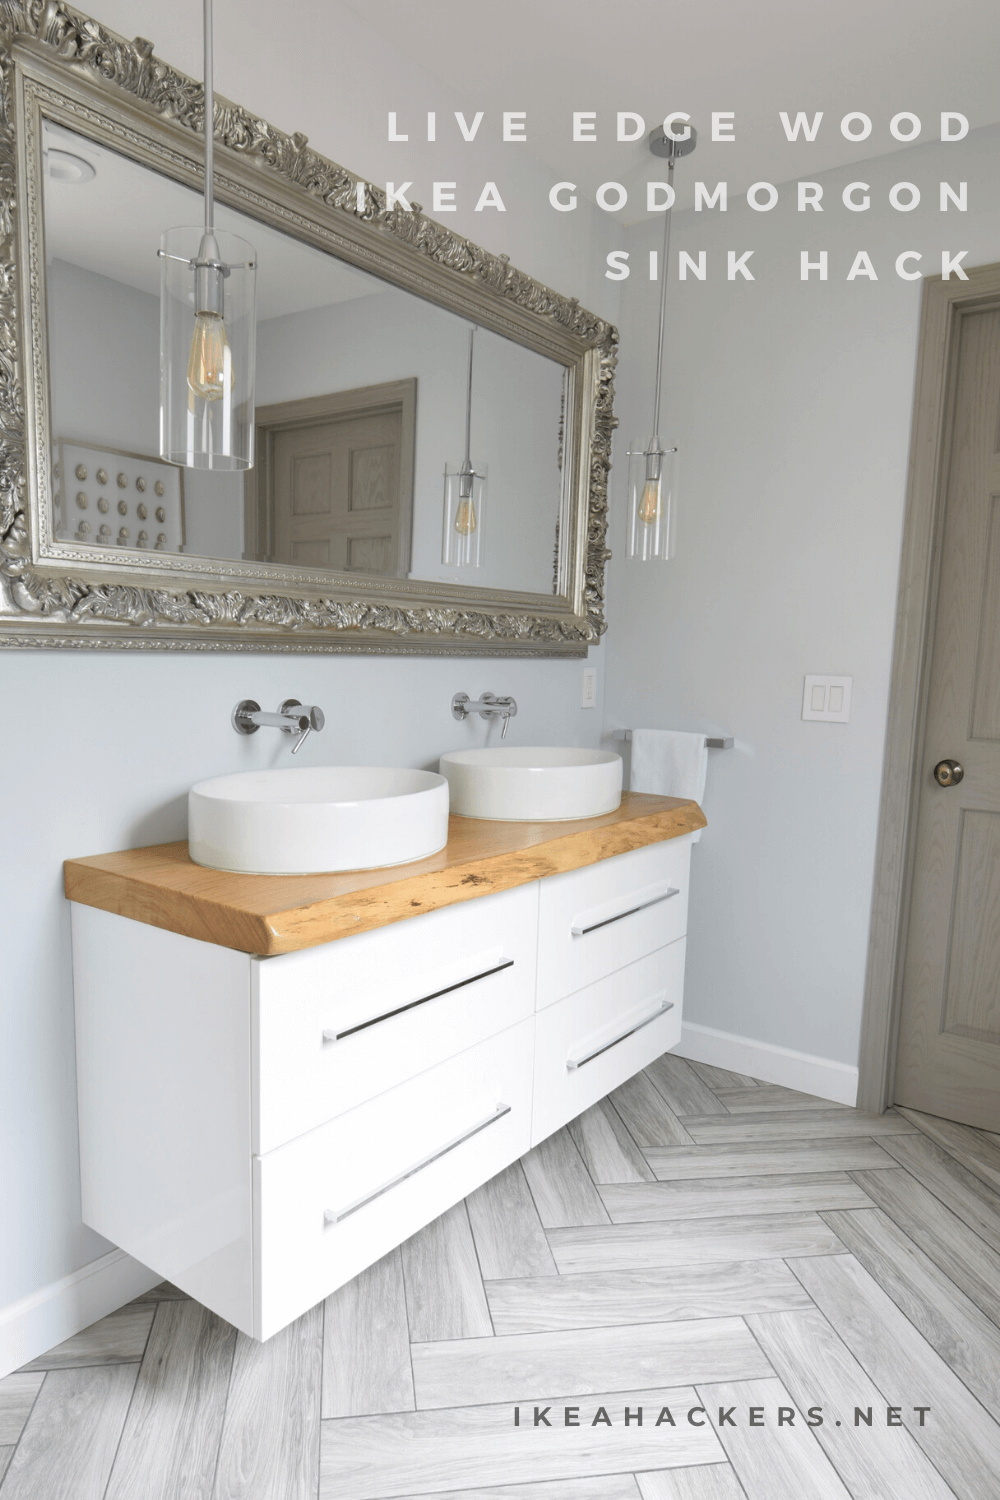 IKEA bathroom vanity gets a luxurious live edge upgrade - IKEA Hackers -   diy Bathroom ikea